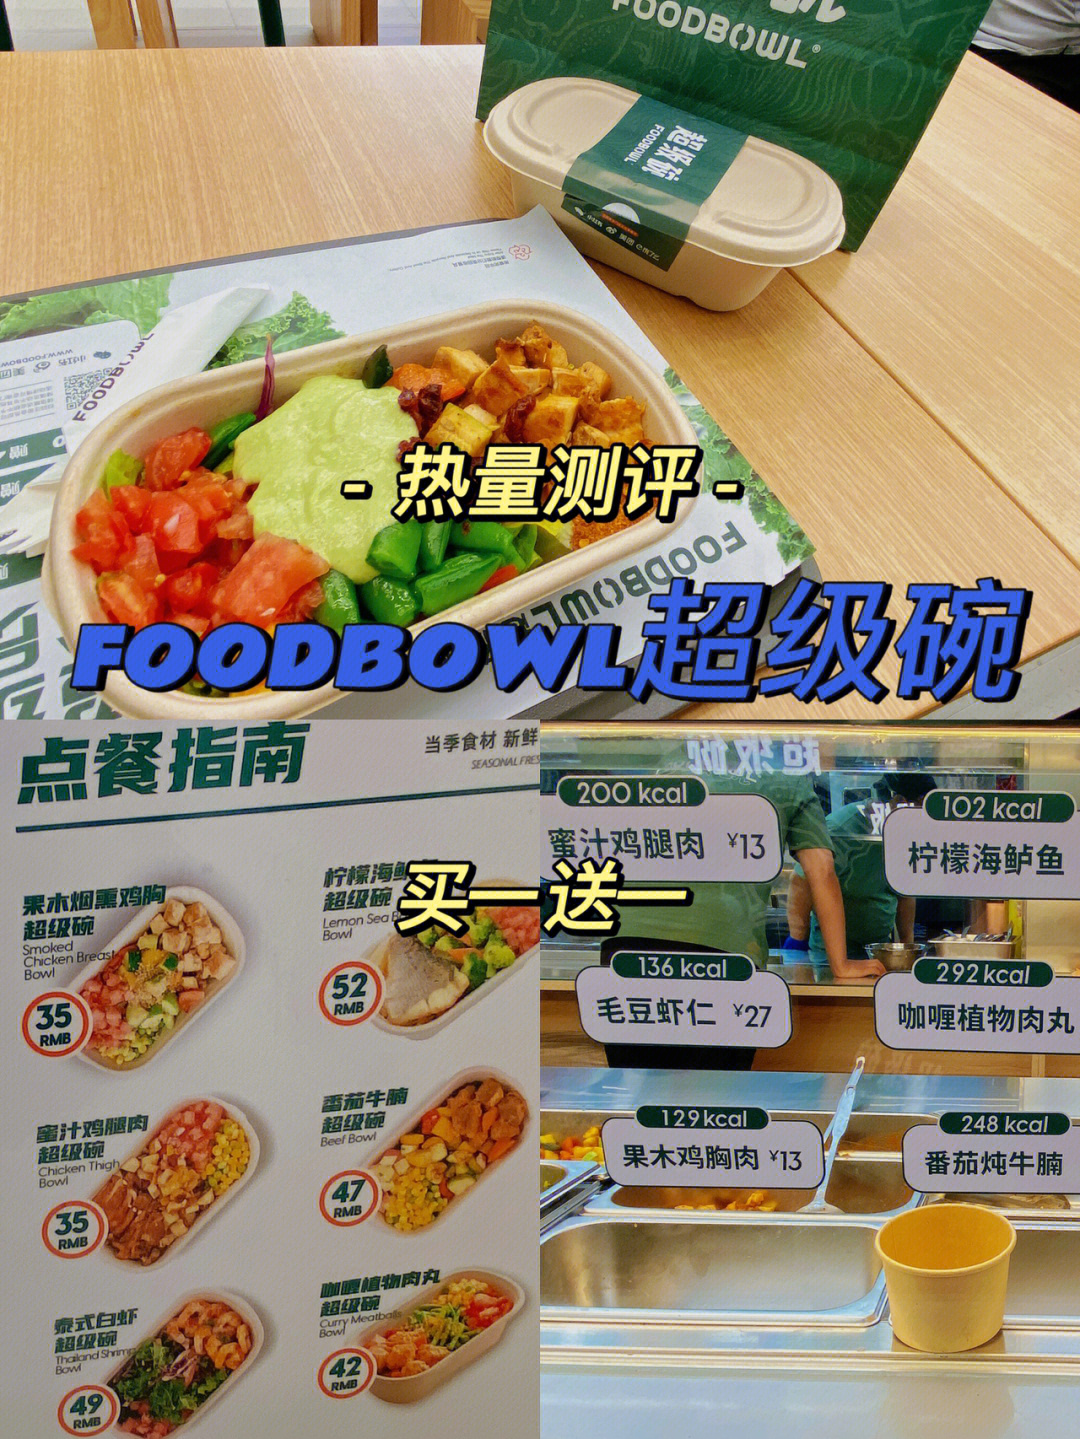 foodbowl超级碗是轻食天花板吧买一送一